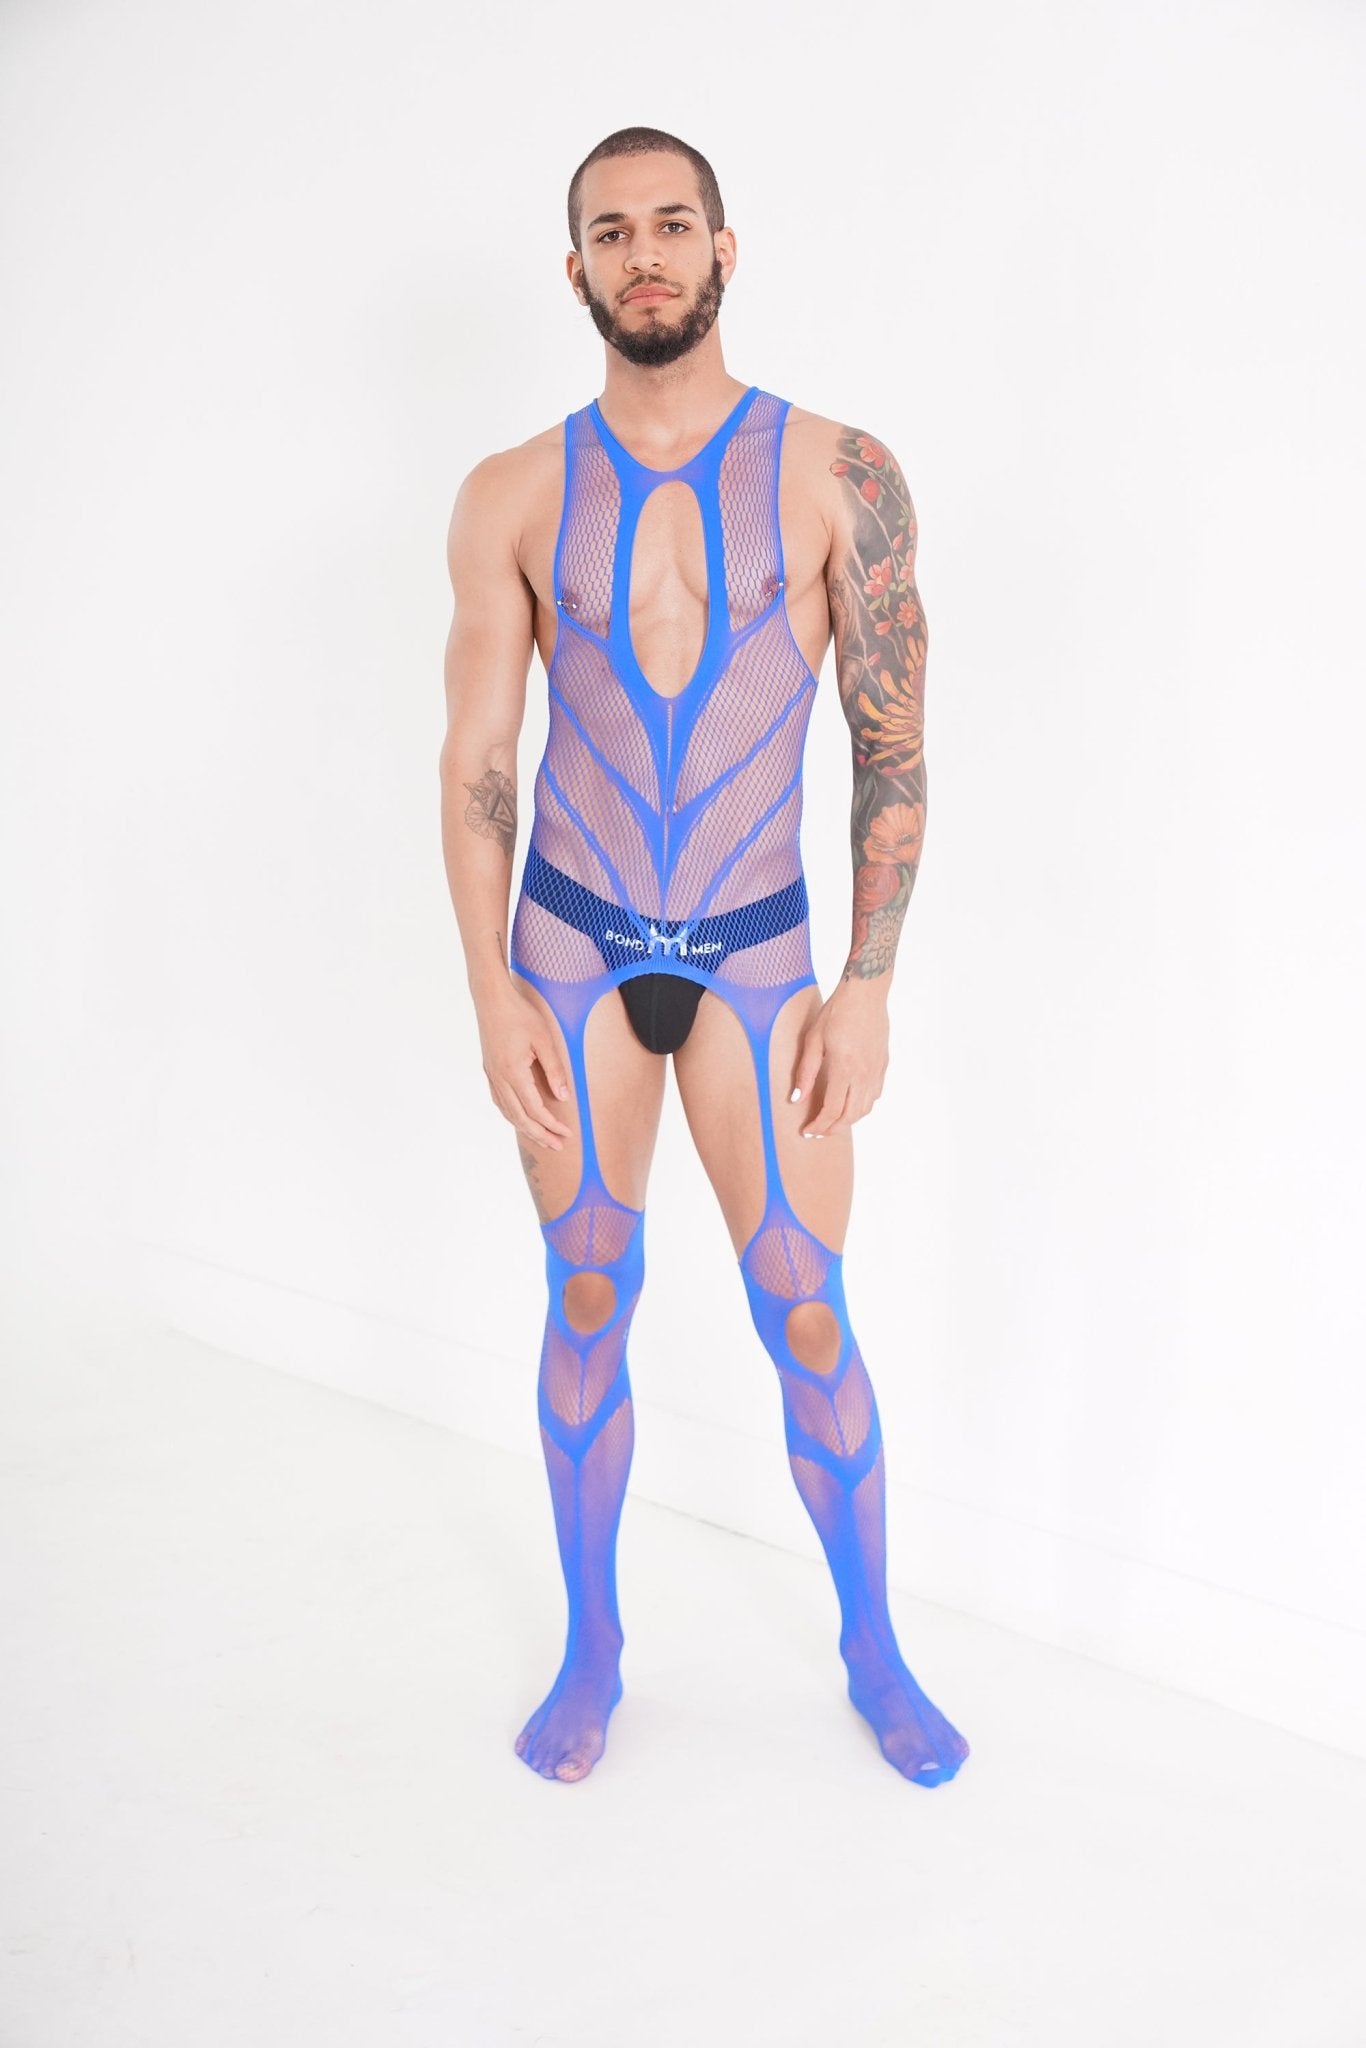 Blue Hollow Fishnet Bodysuit on model, body suit, bdsm bodysuit, lgbtq bodysuit, fetish bodysuit